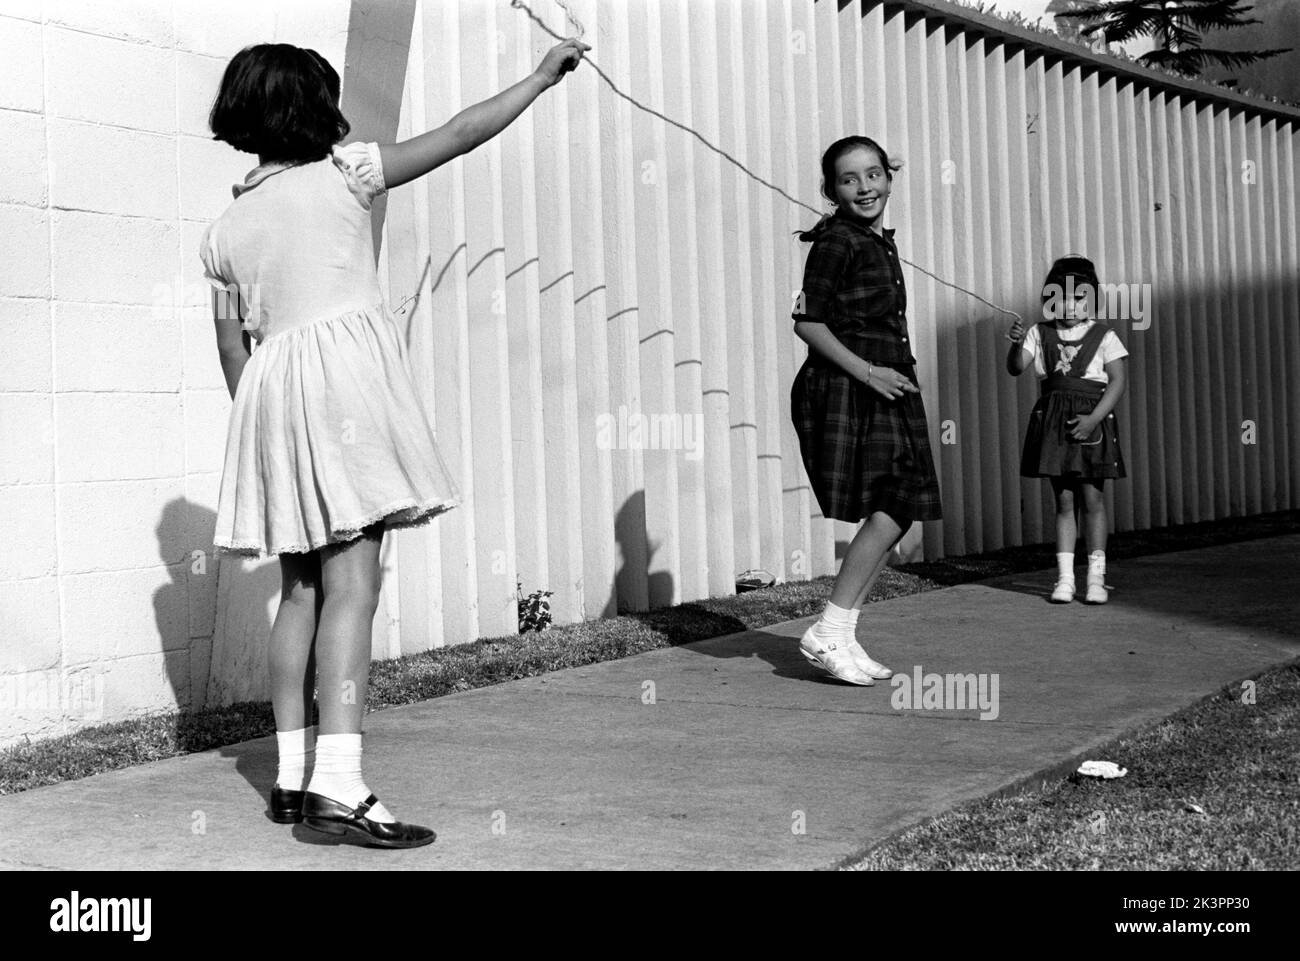 Mexiko im Jahr 1960s. Drei Mädchen spielen auf der Straße, mit einem Springseil - einem Springseil. Ein Mädchen an jedem Ende des Seils schwingt es und ein Mädchen in der Mitte springt darüber. Mexiko 1964. Roland Palm Ref.-Ordner 2 Stockfoto